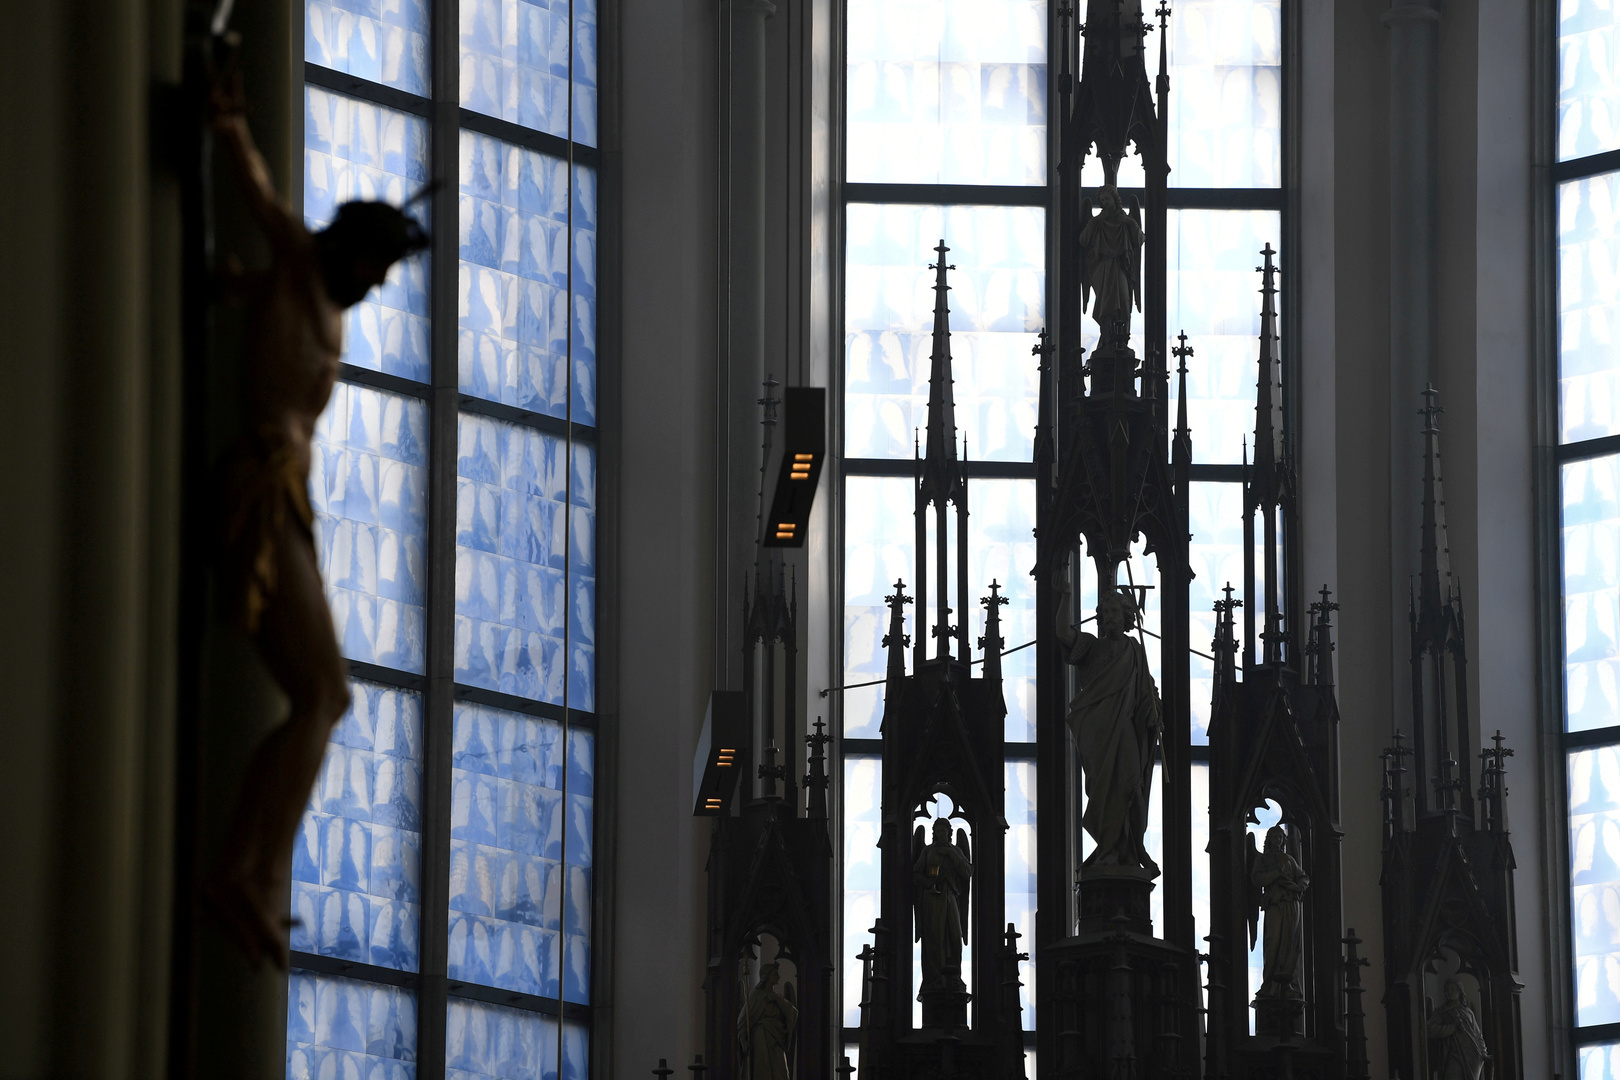 الكنيسة الكاثوليكية في ألمانيا ستدفع تعويضات عن انتهاكات رجال الدين الجنسية